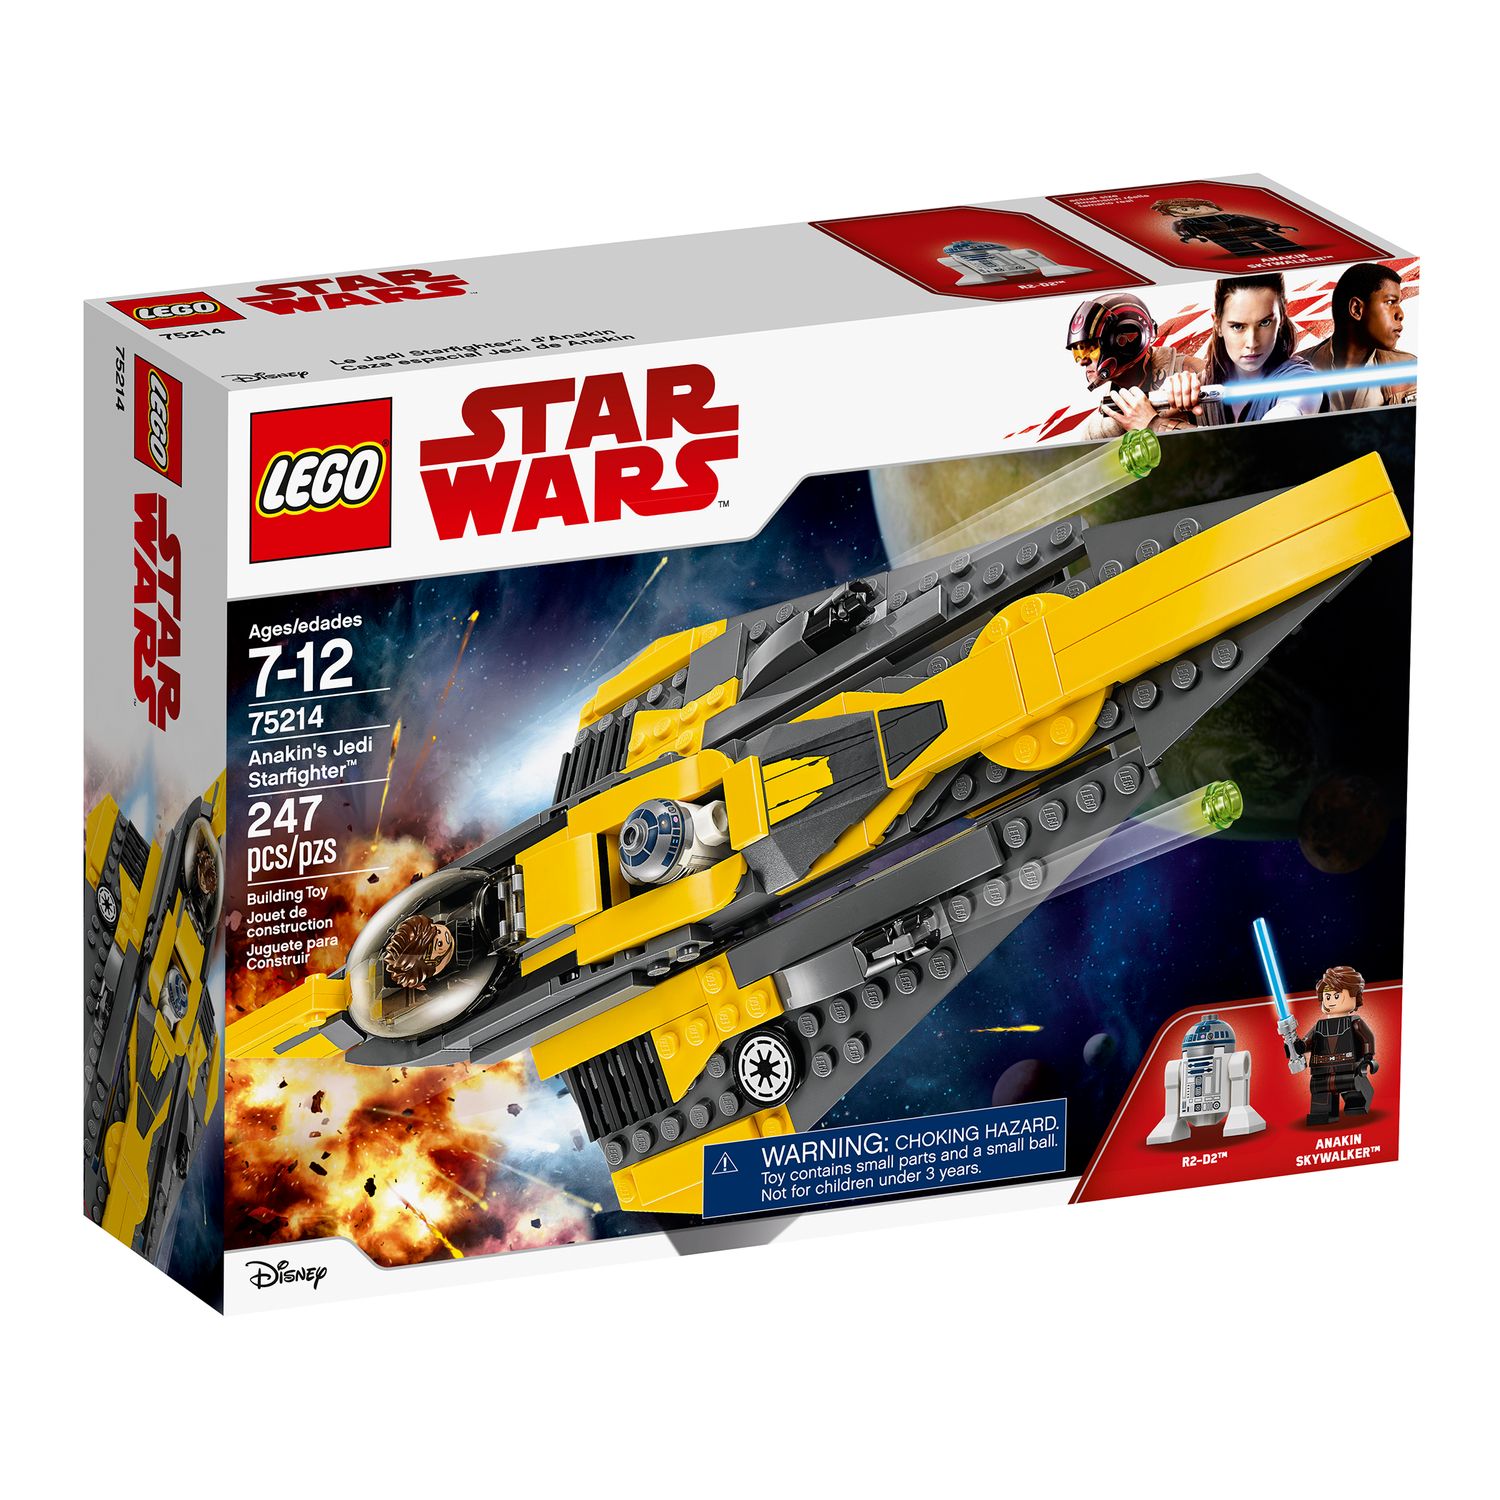 LEGO Star Wars Anakin's Jedi 